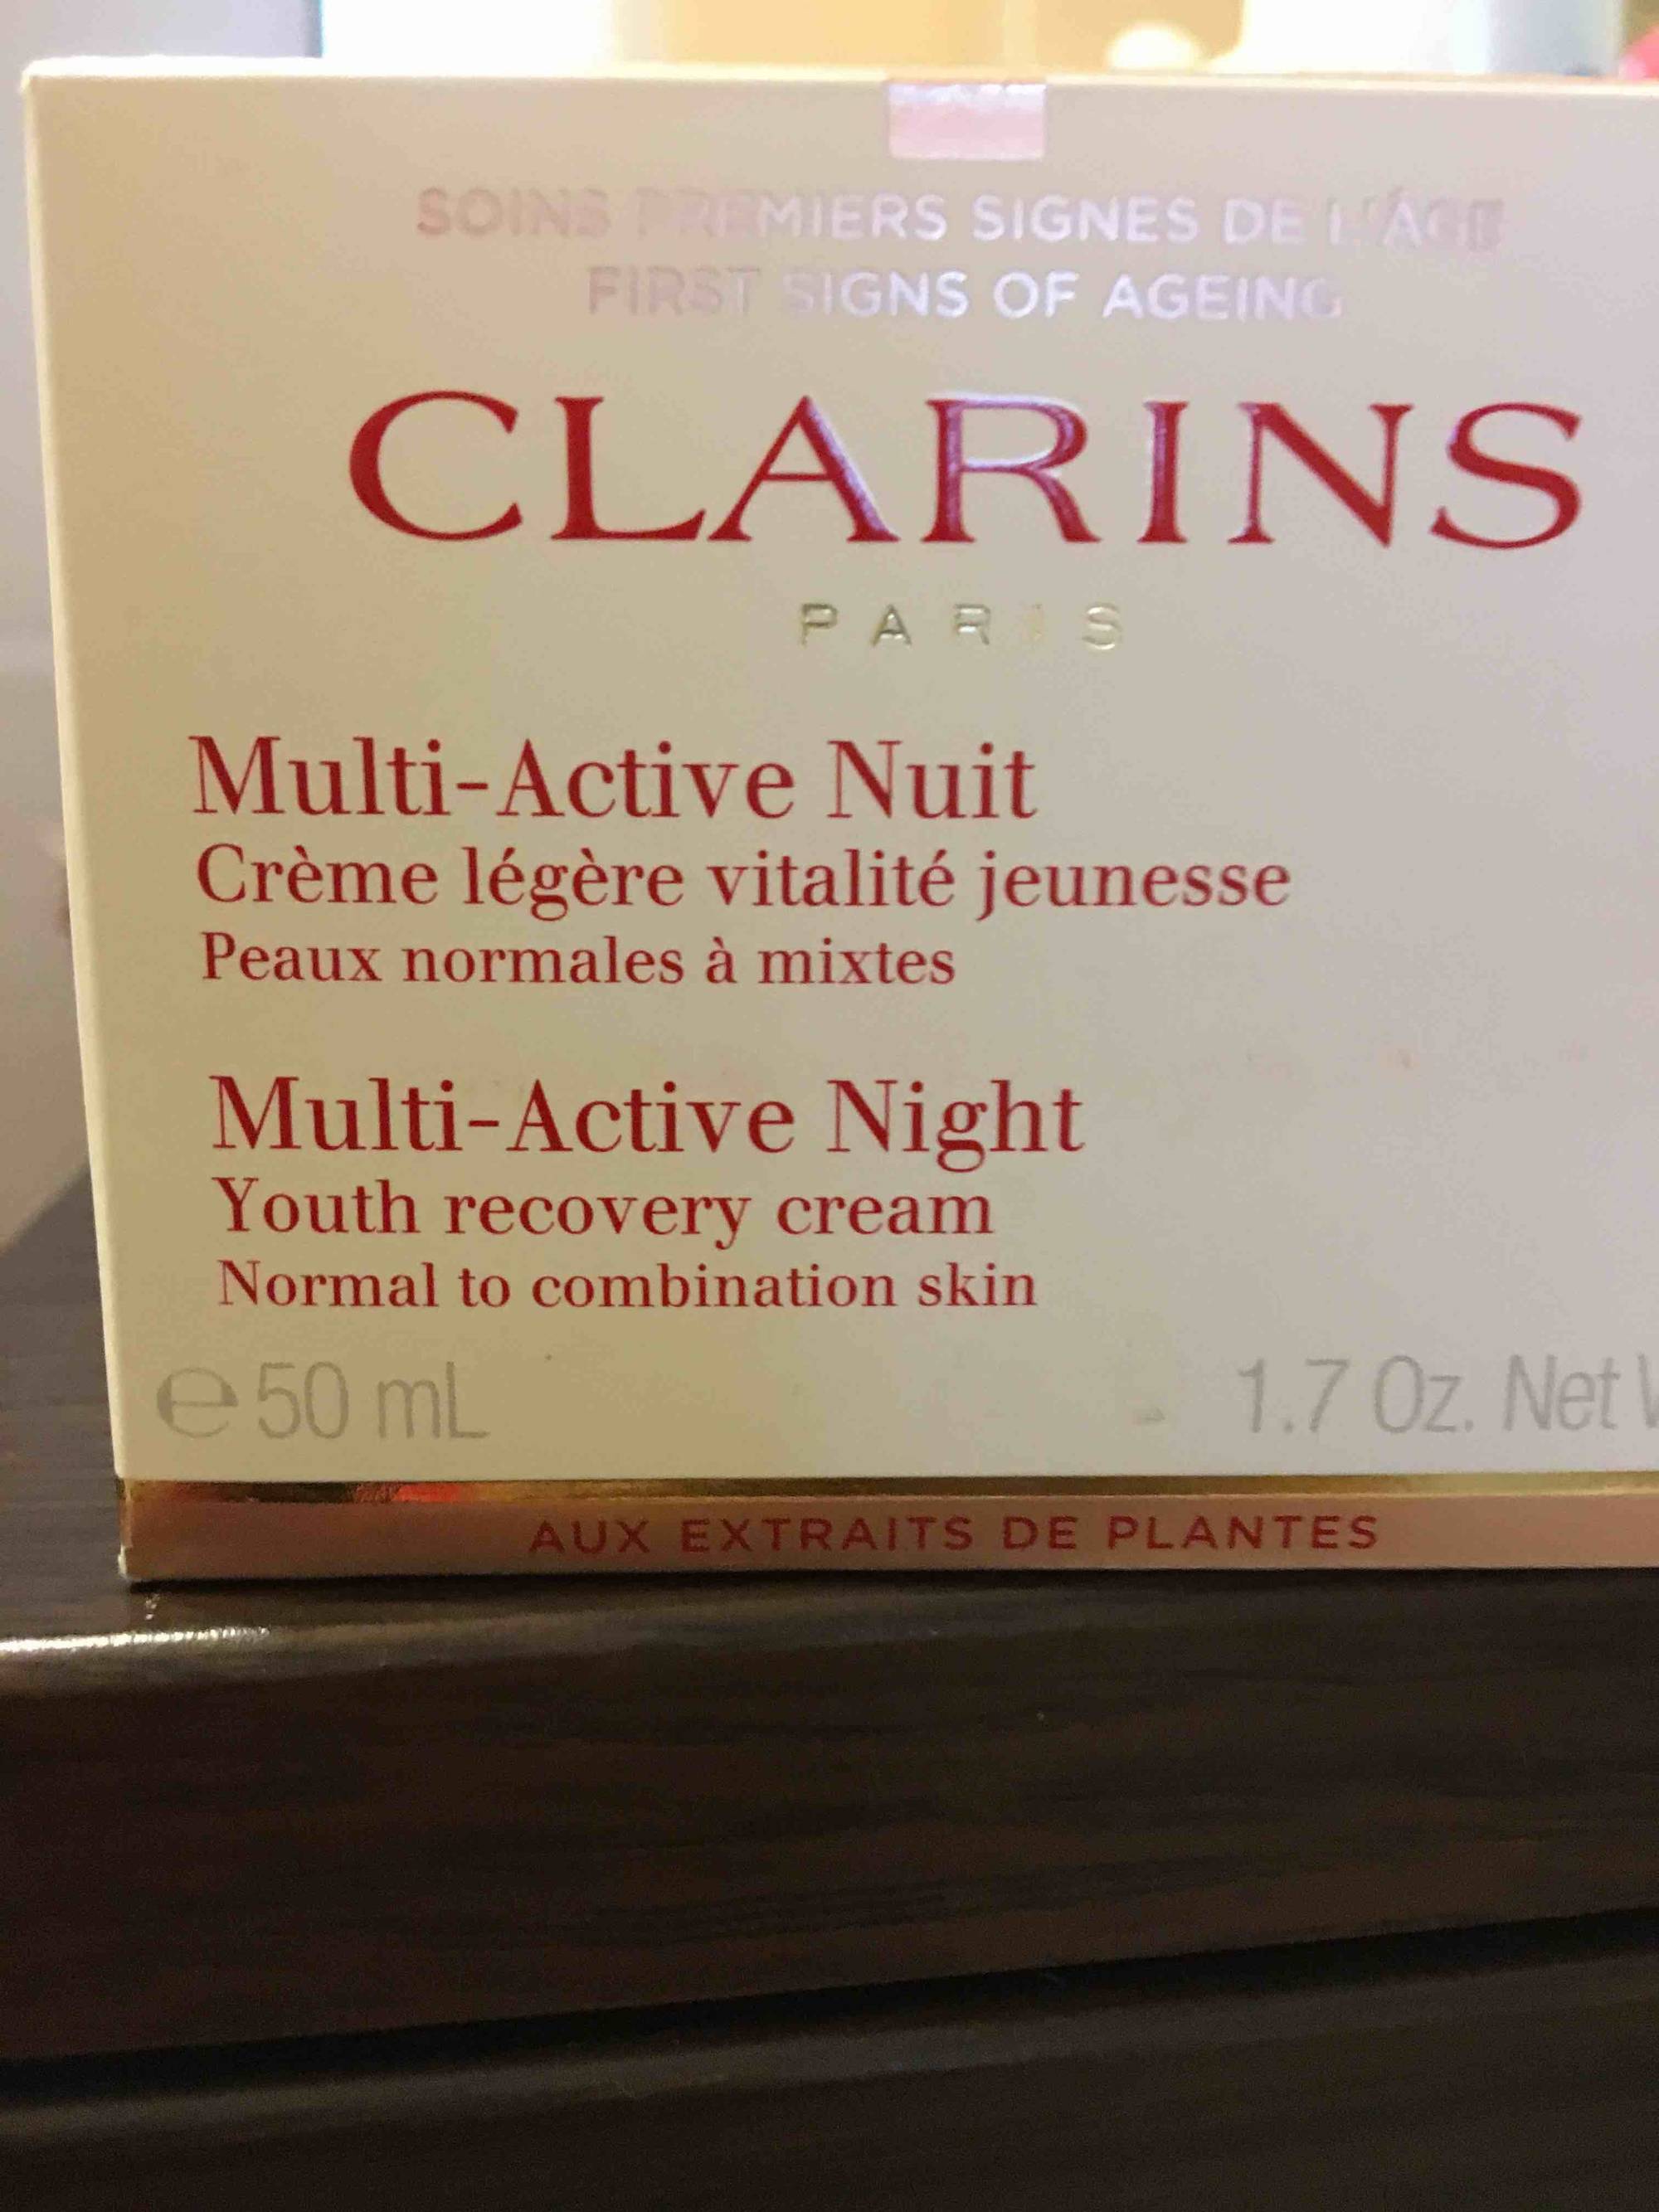 CLARINS PARIS - Multi-Active nuit - Crème légère vitalité jeunesse